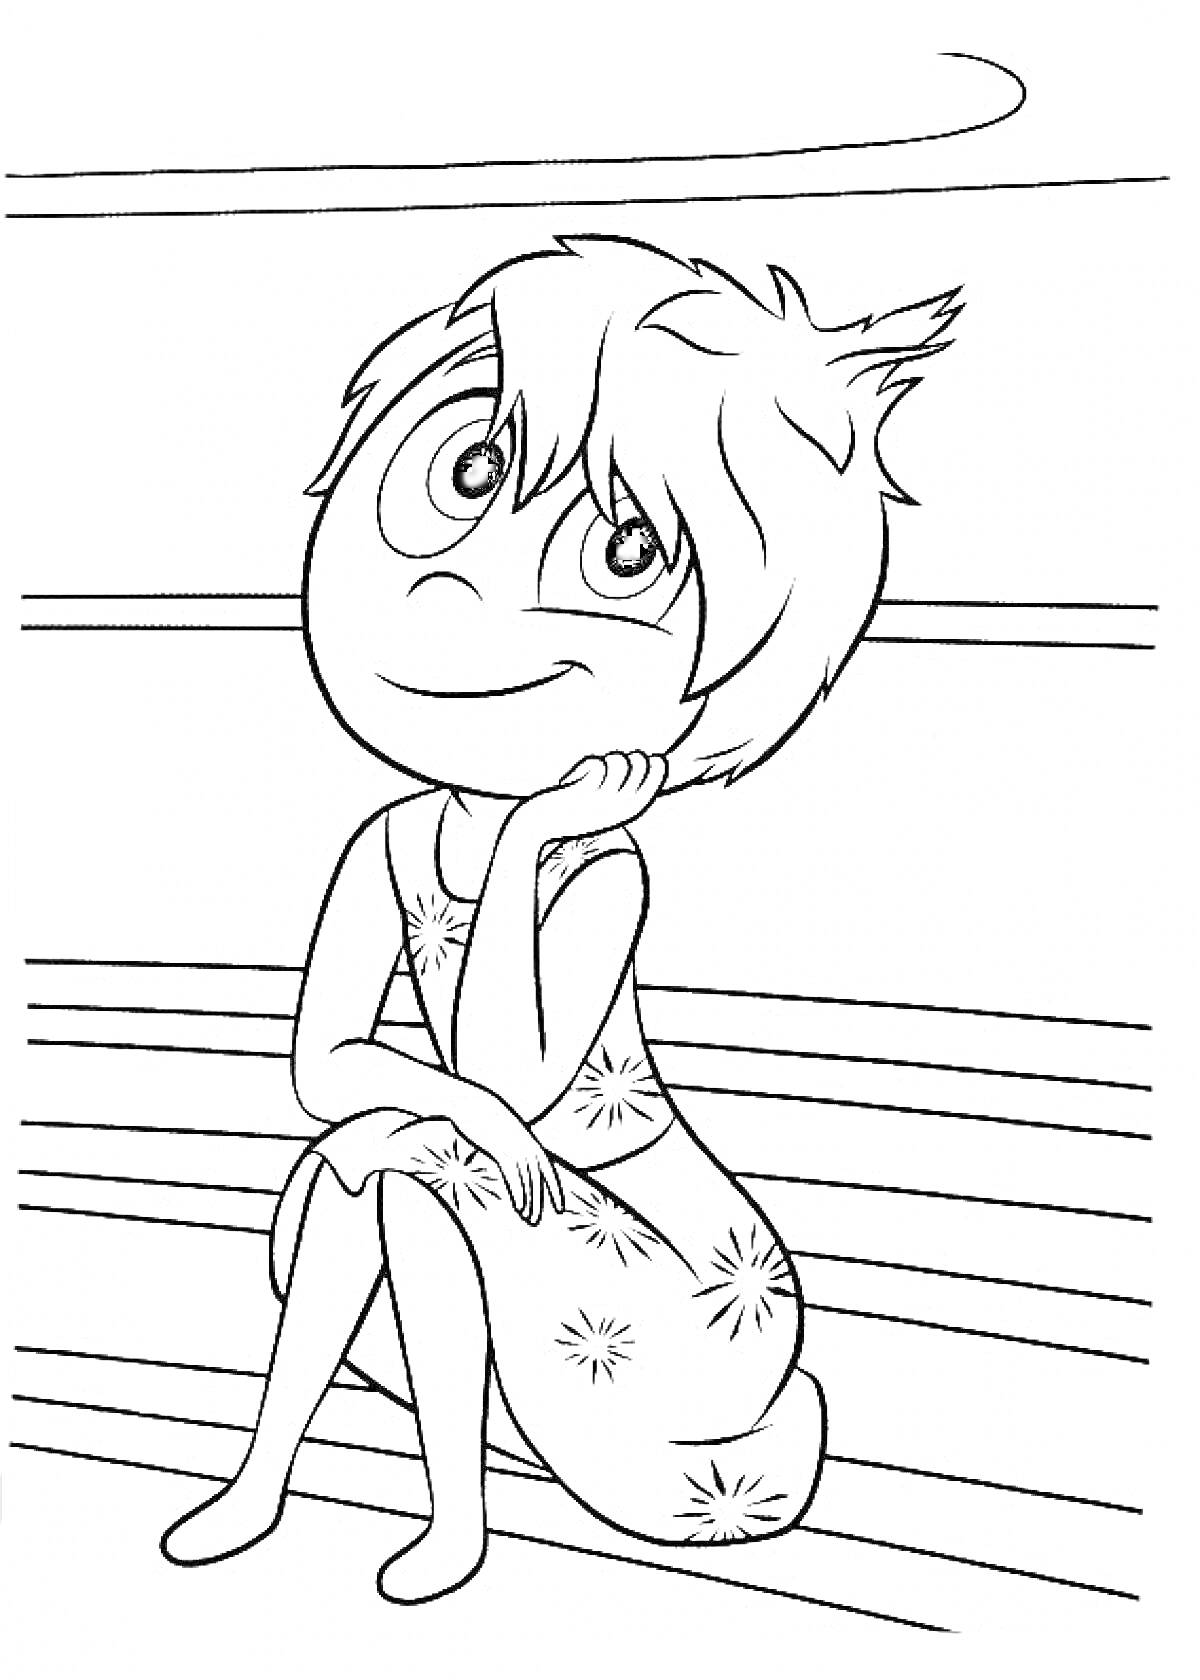 Раскраска Девочка с короткими волосами и платьем со звездами сидит на скамейке, сцена из мультфильма 